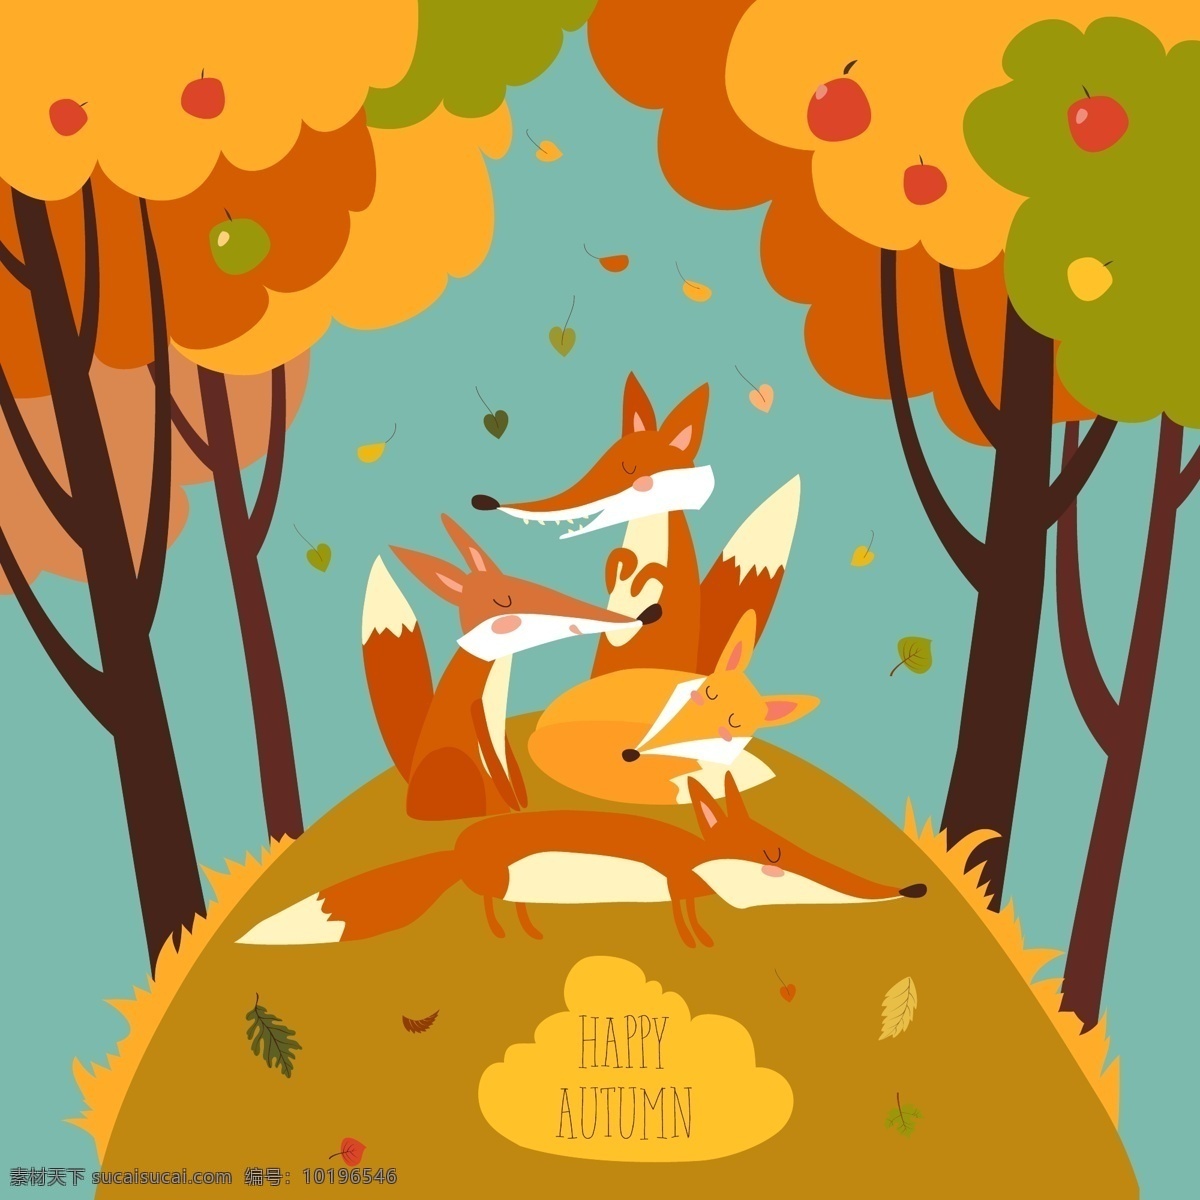 秋季 森林 中 可爱 狐狸 元素 矢量图 卡通素材 可爱狐狸 免抠 免抠素材 秋季森林 矢量素材